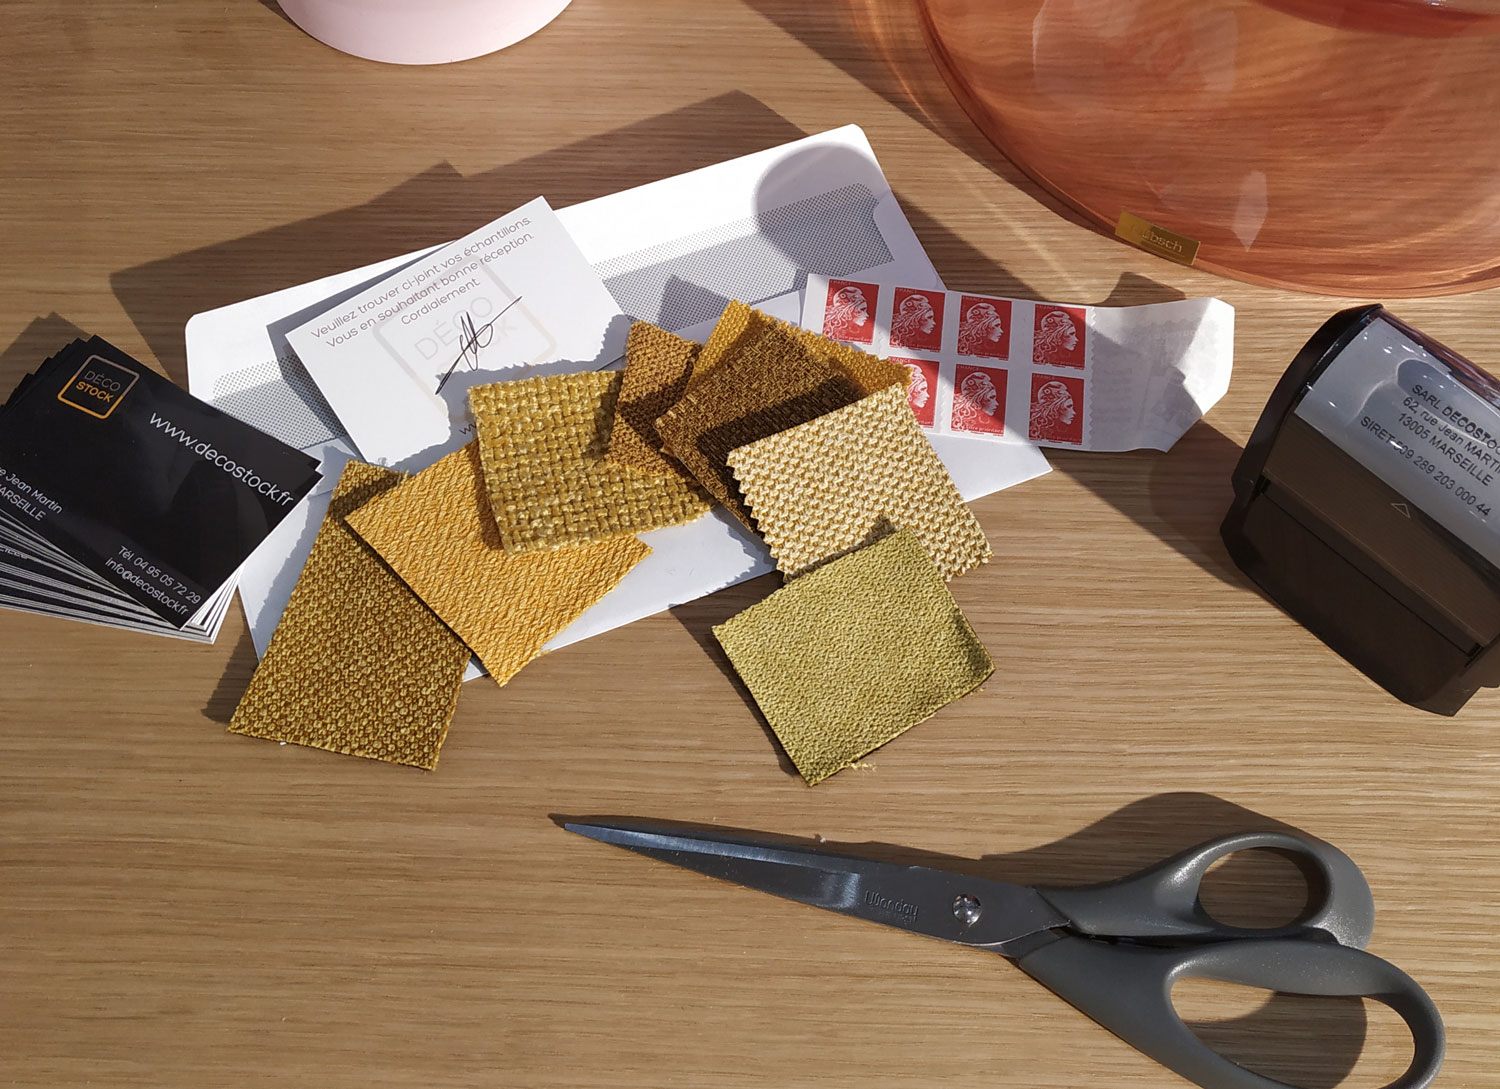 Demander des échantillons de tissus de canapés gratuits pour comparer les textures et les coloris